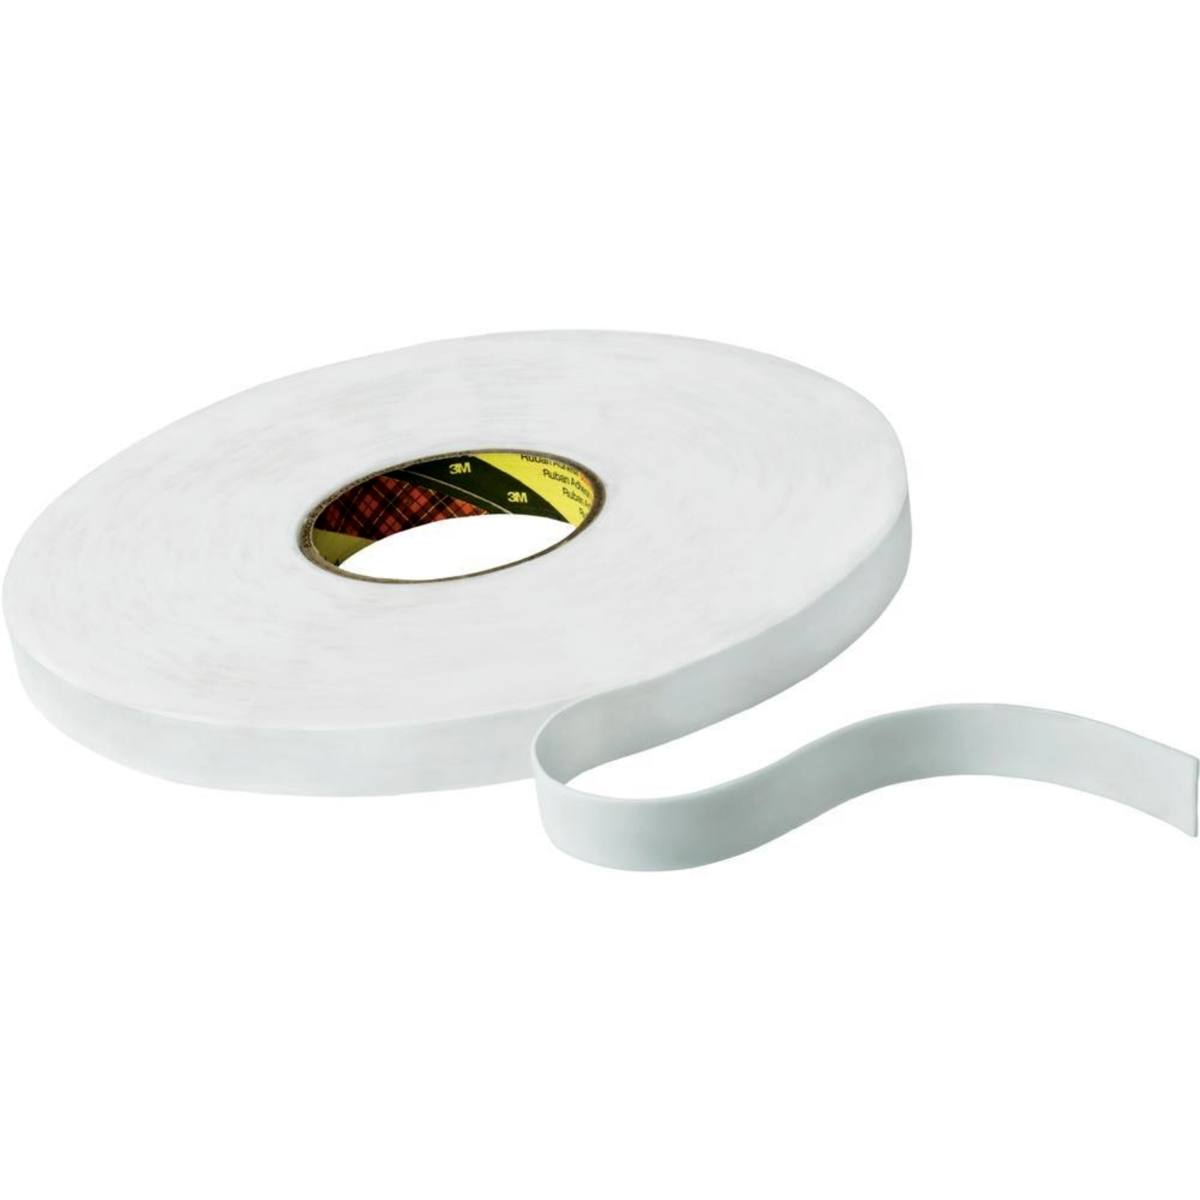 Cinta adhesiva de espuma de PE 3M con adhesivo de resina de caucho 9528, blanca, 15 mm x 66 m, 0,8 mm